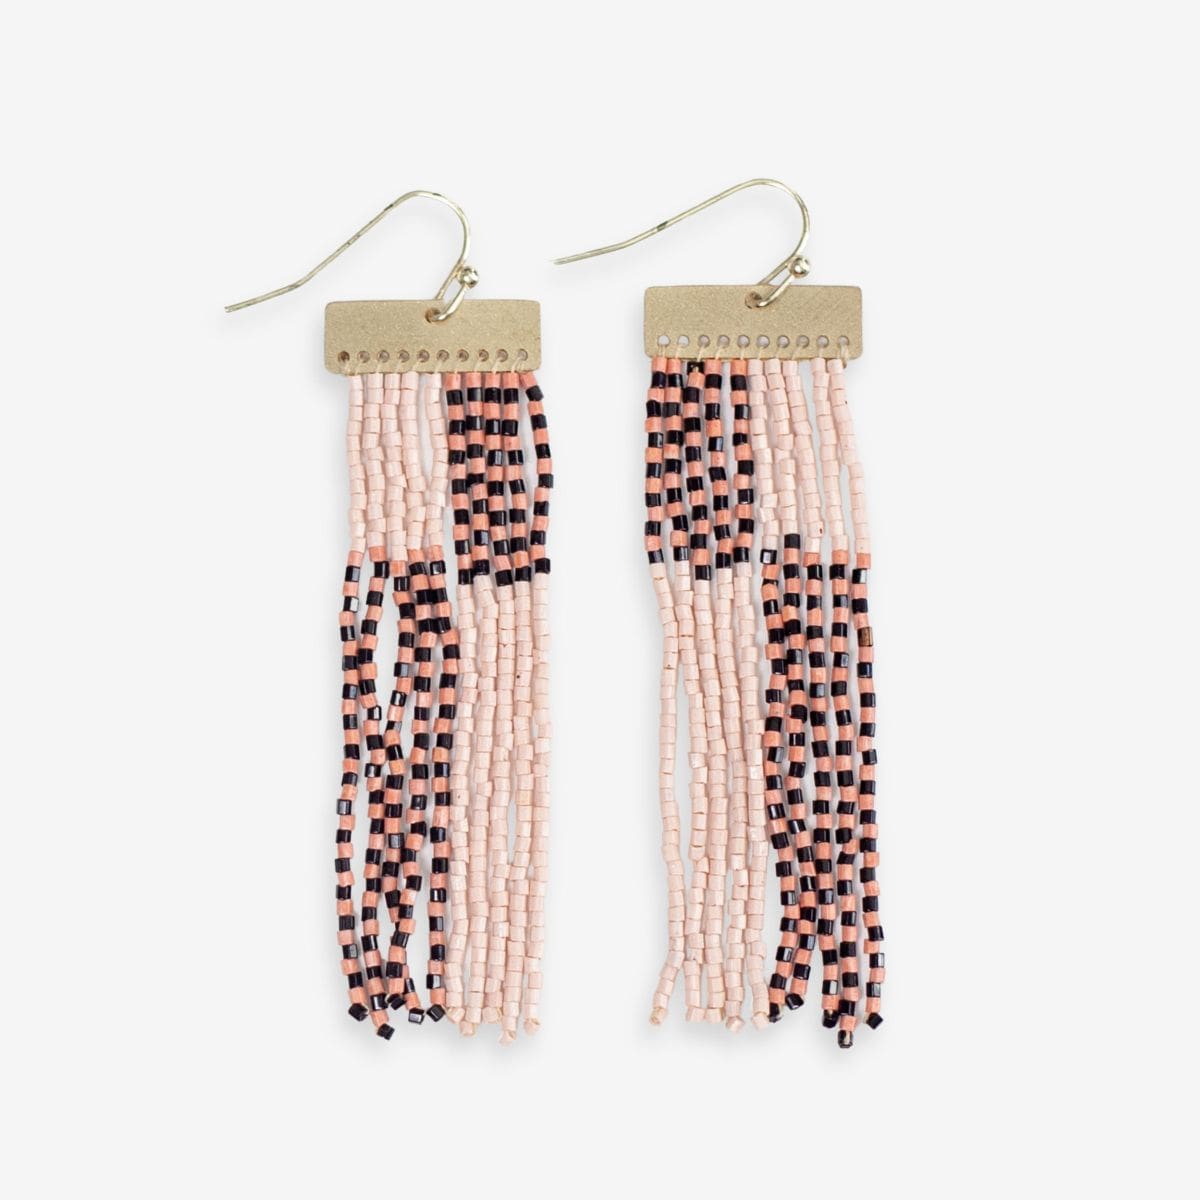 Lana Rectangle Hanger Colorblocks With Stripes Beaded Fringe Earrings Blush SHORT FRINGE